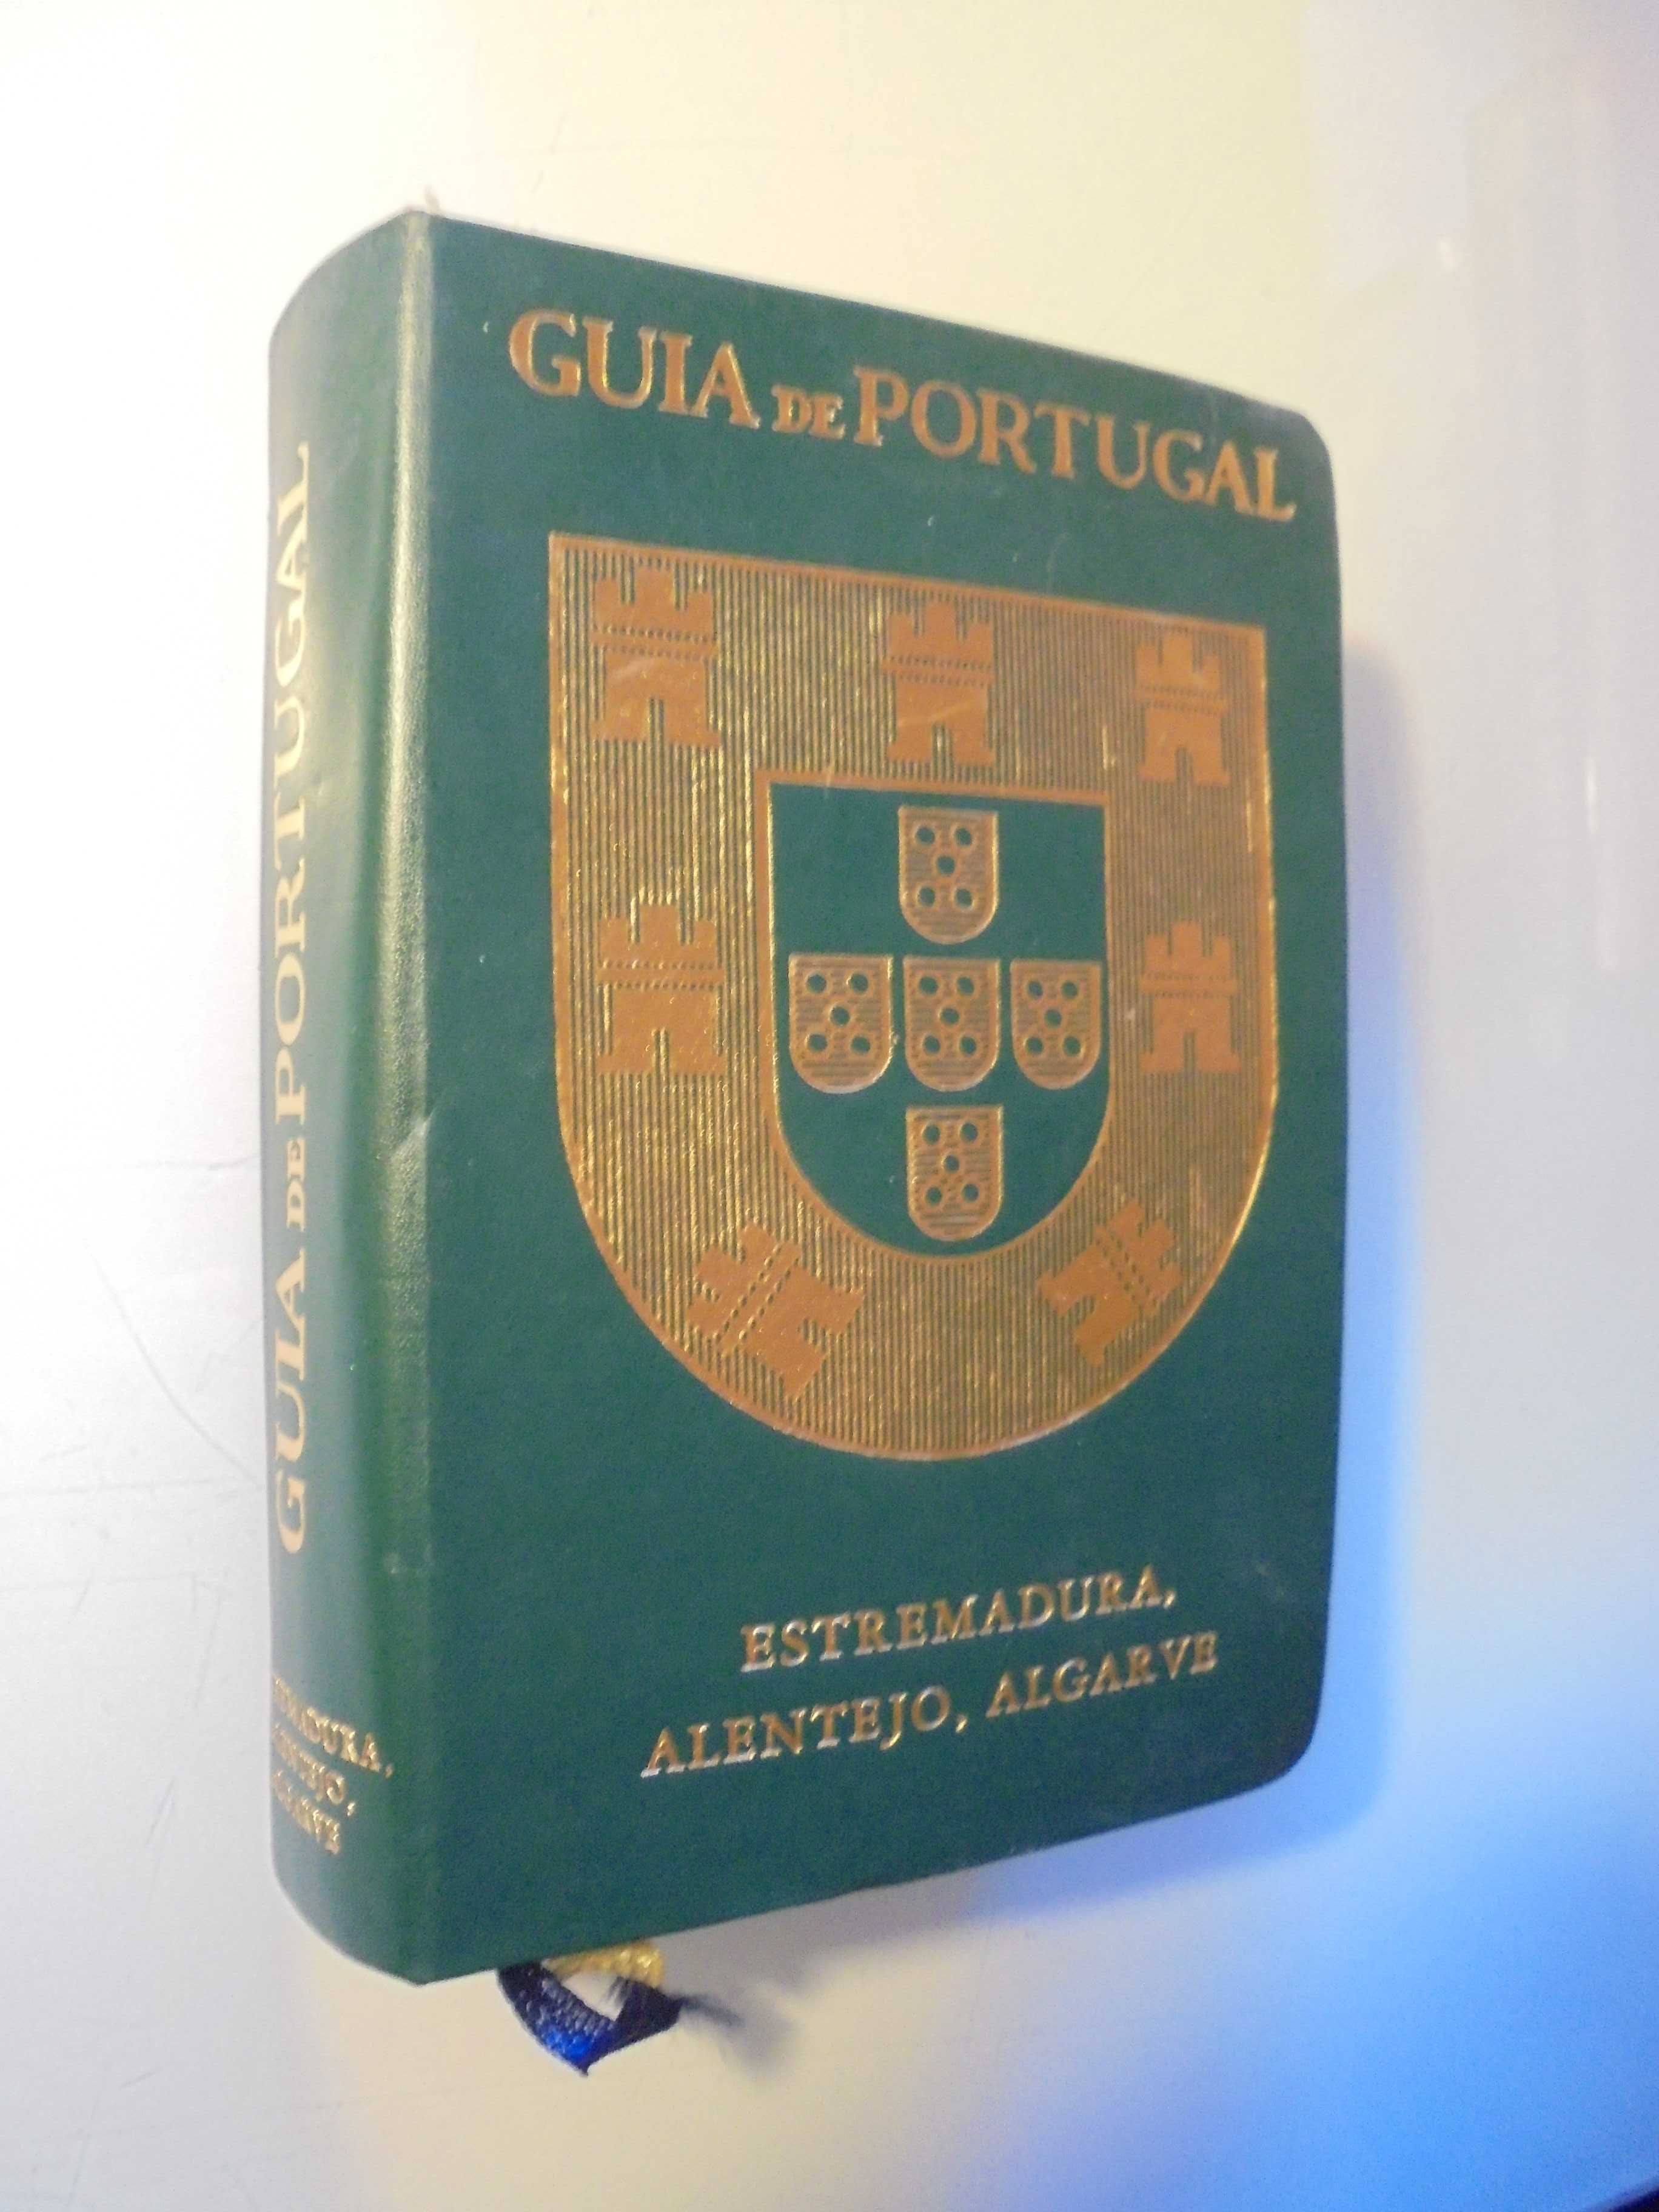 Guia de Portugal-Estremadura-Alentejo-Algarve